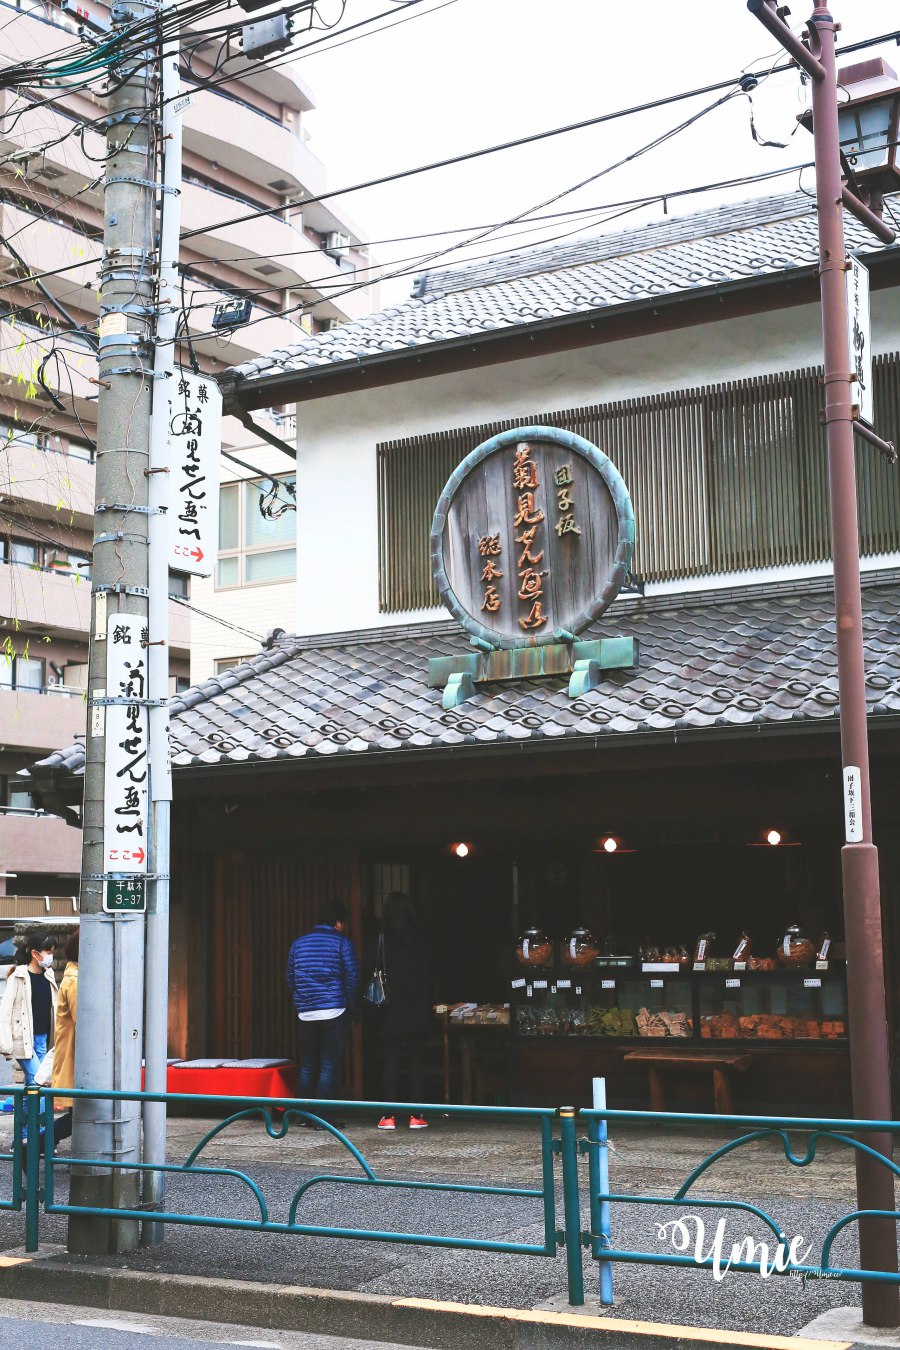 跟著日本在地觀光導遊FELLOW TRIP一起深度玩日本! 東京谷中銀座|根津神社|千駄木日本和菓子教室初體驗